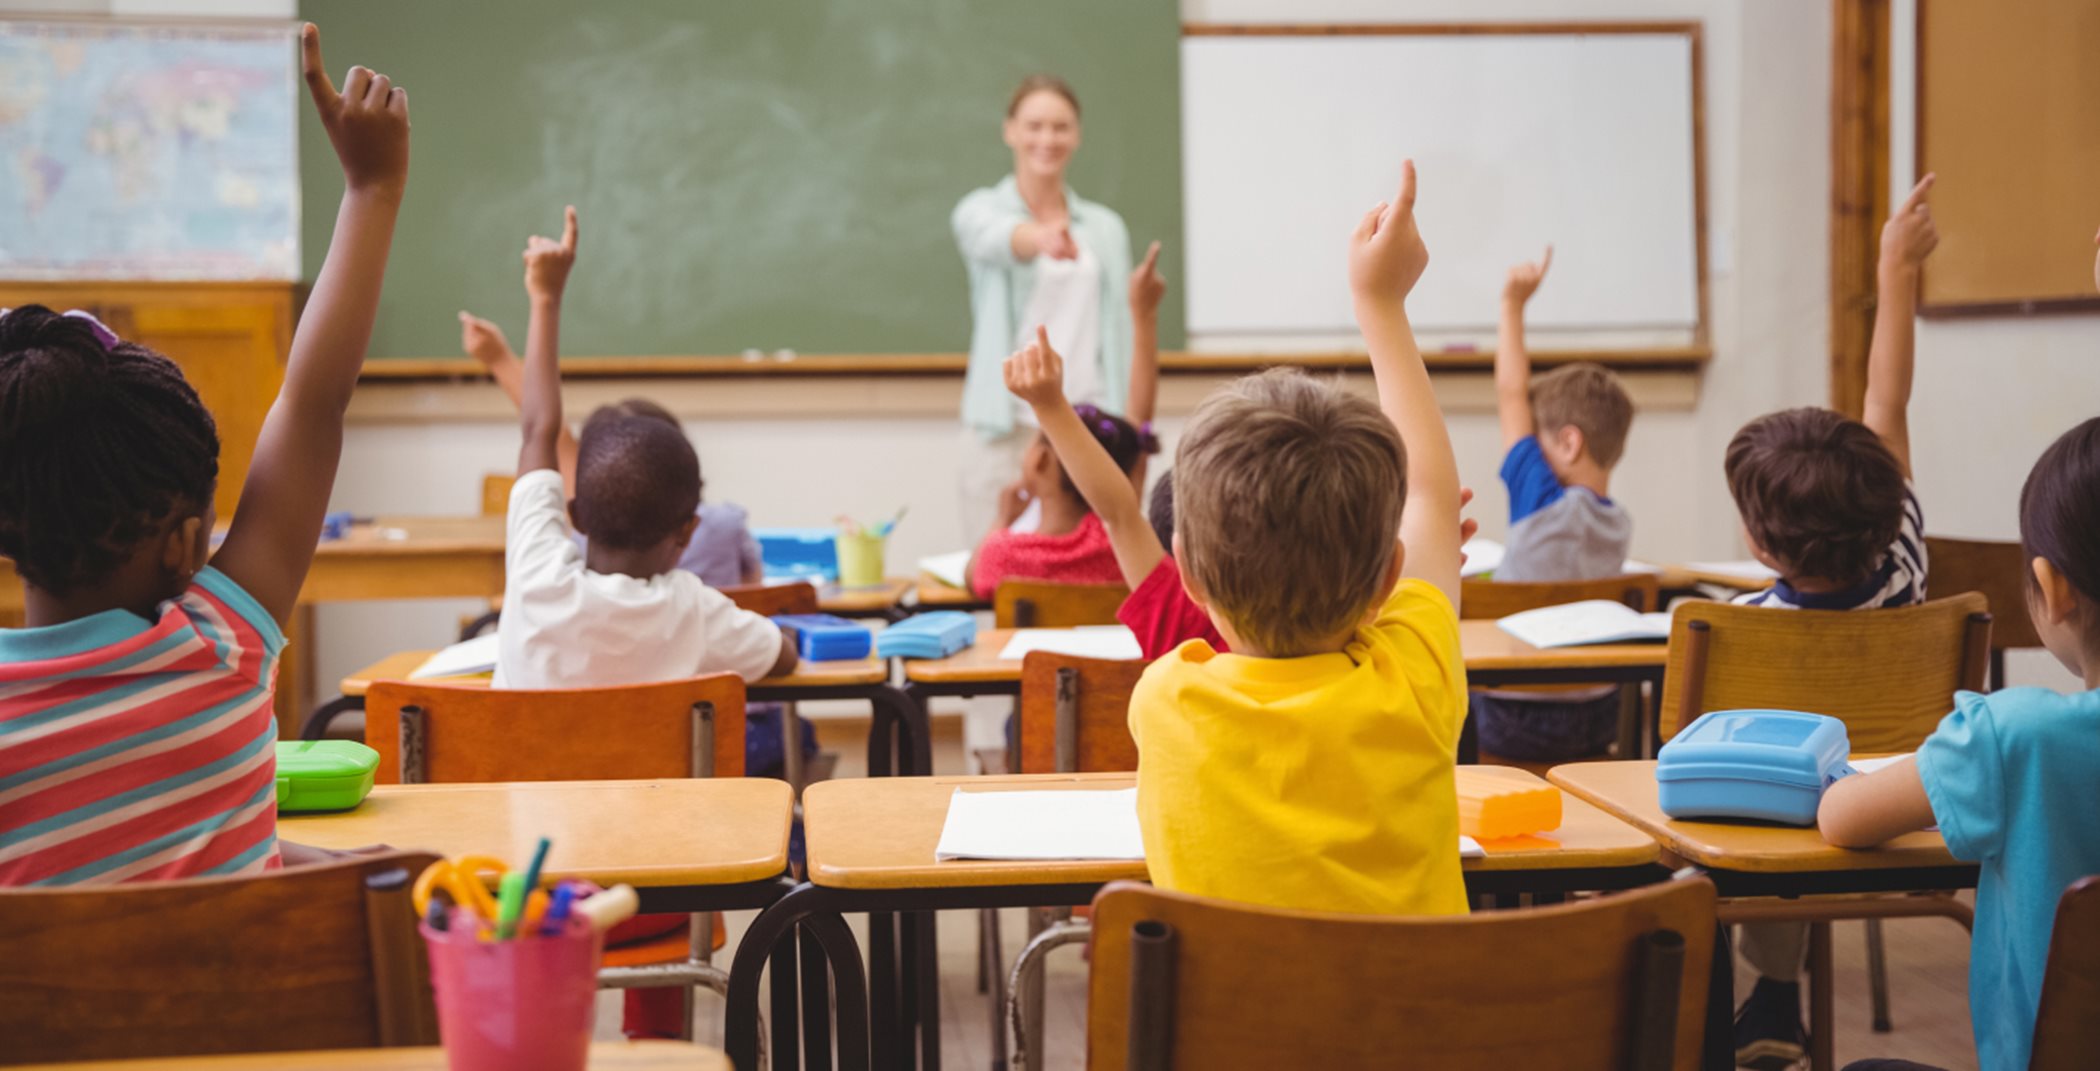 Children raising their hands for a teacher